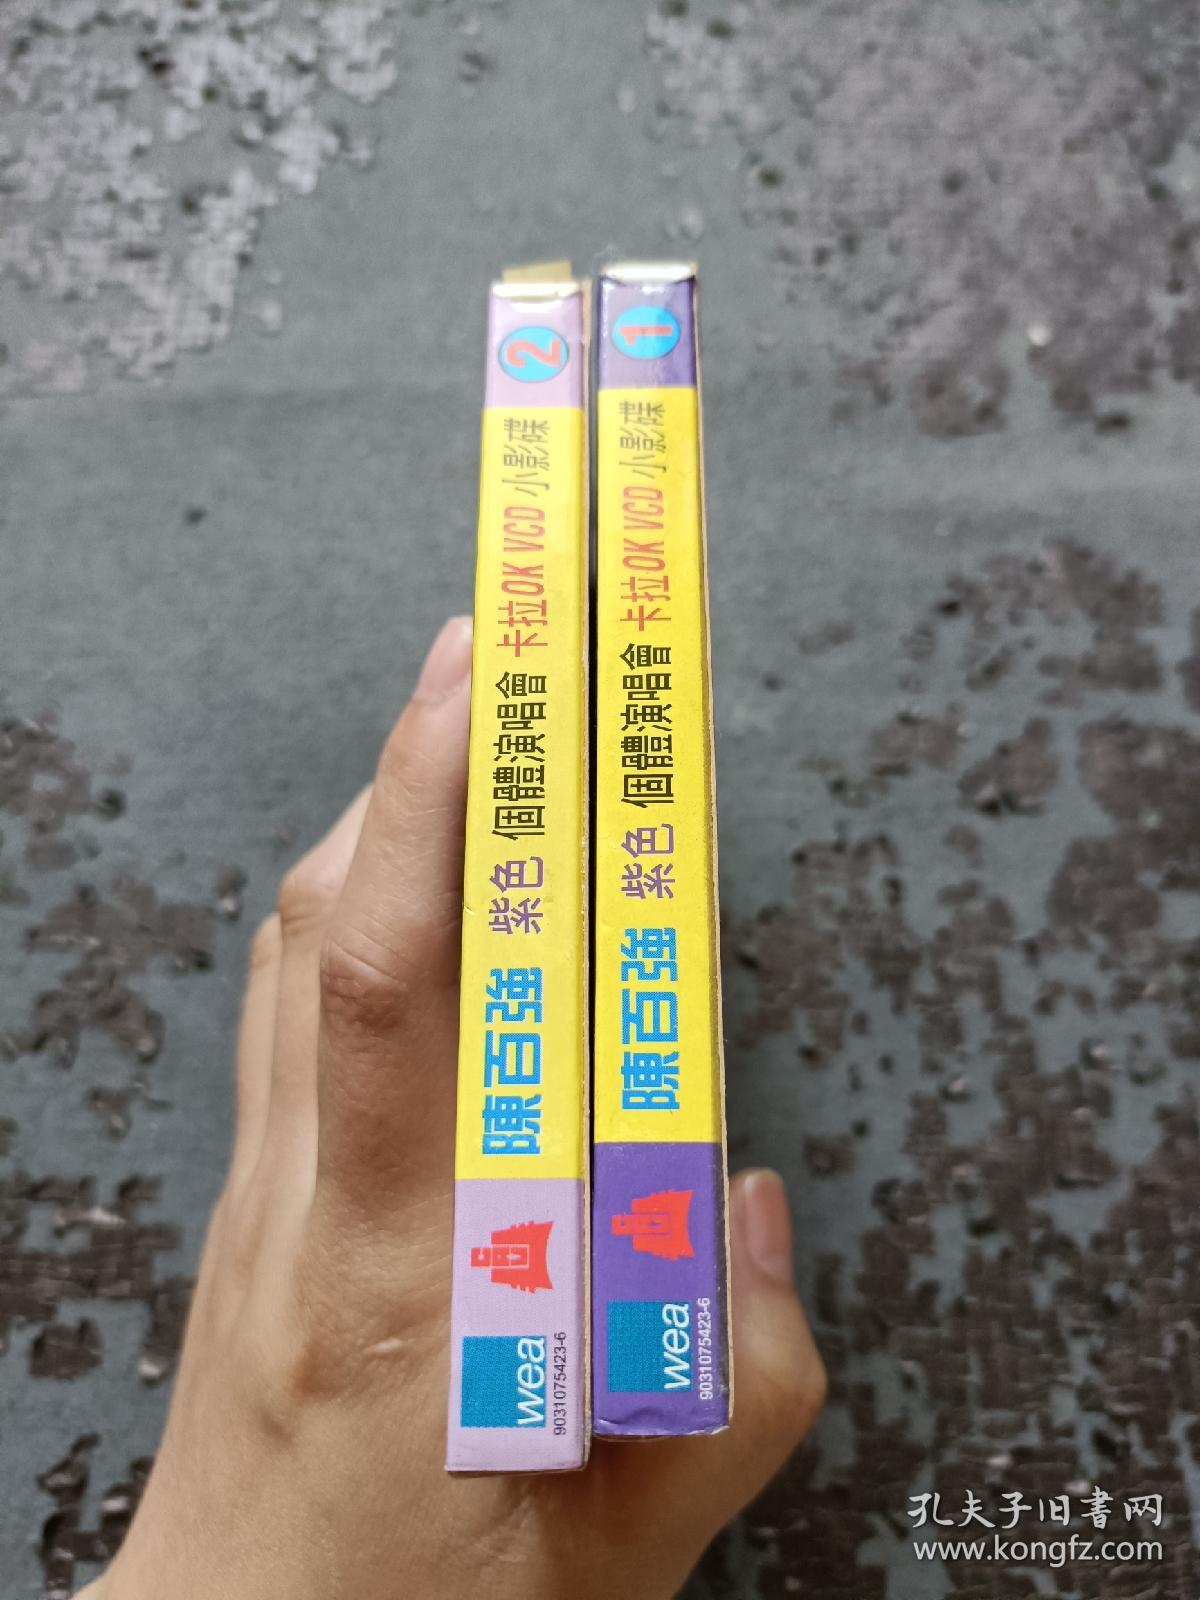 陈百强紫色个体演唱会 卡拉OK VCD小影碟 2.0版 1+2 共2碟